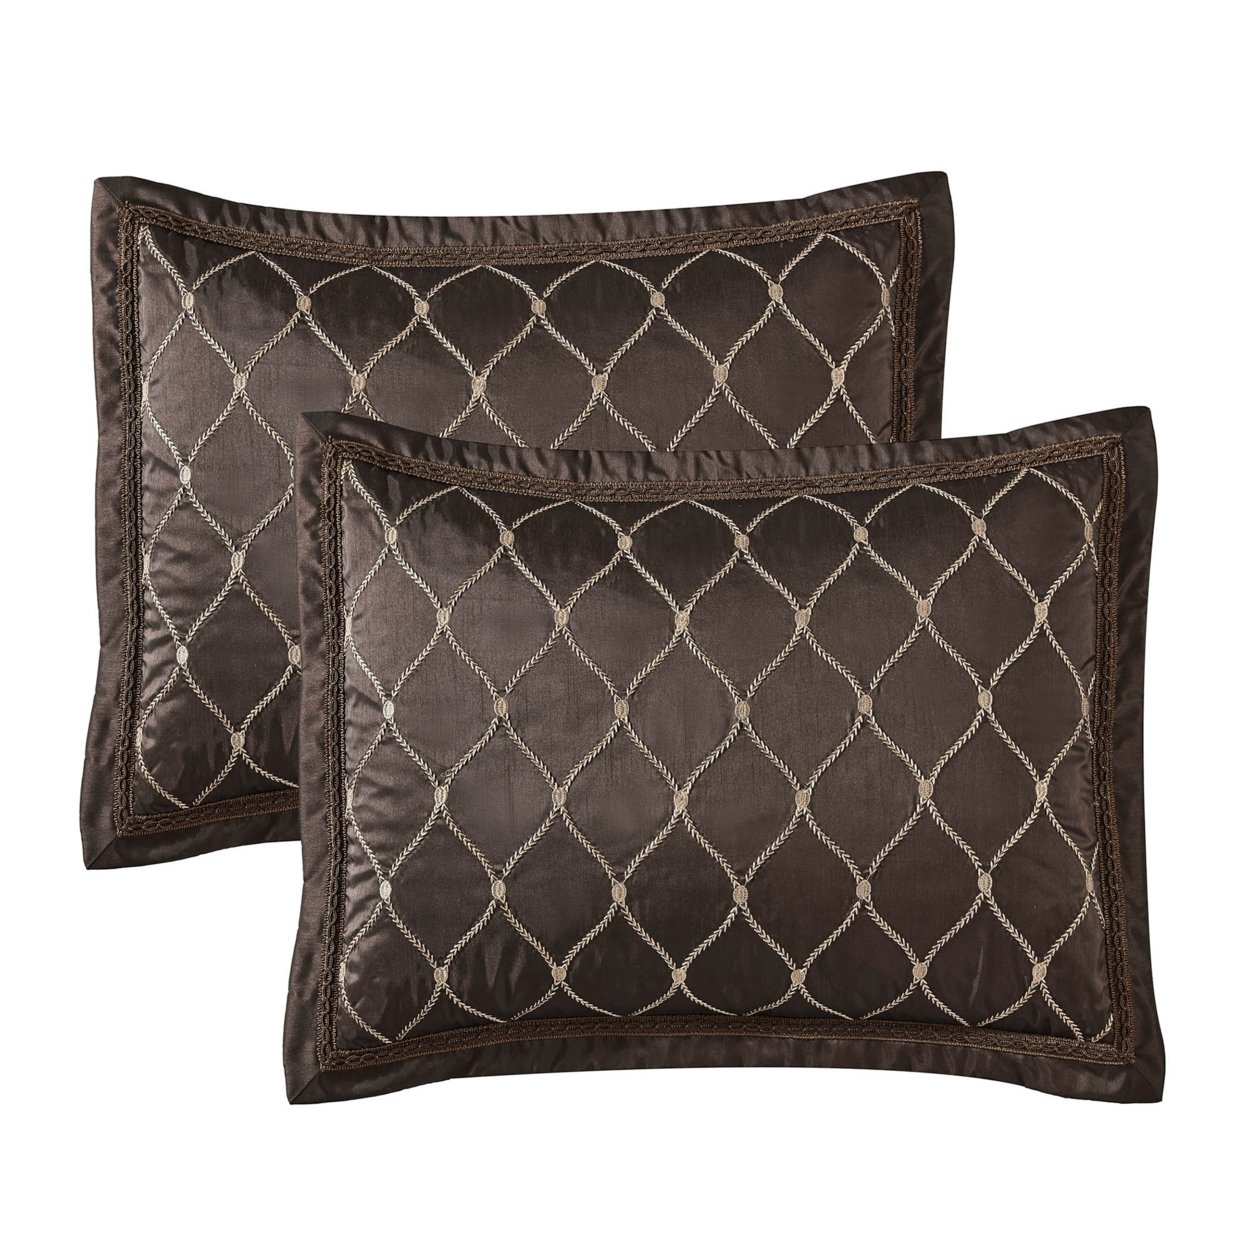 9 Piece Queen Comforter Set With Geometric Print, Brown- Saltoro Sherpi